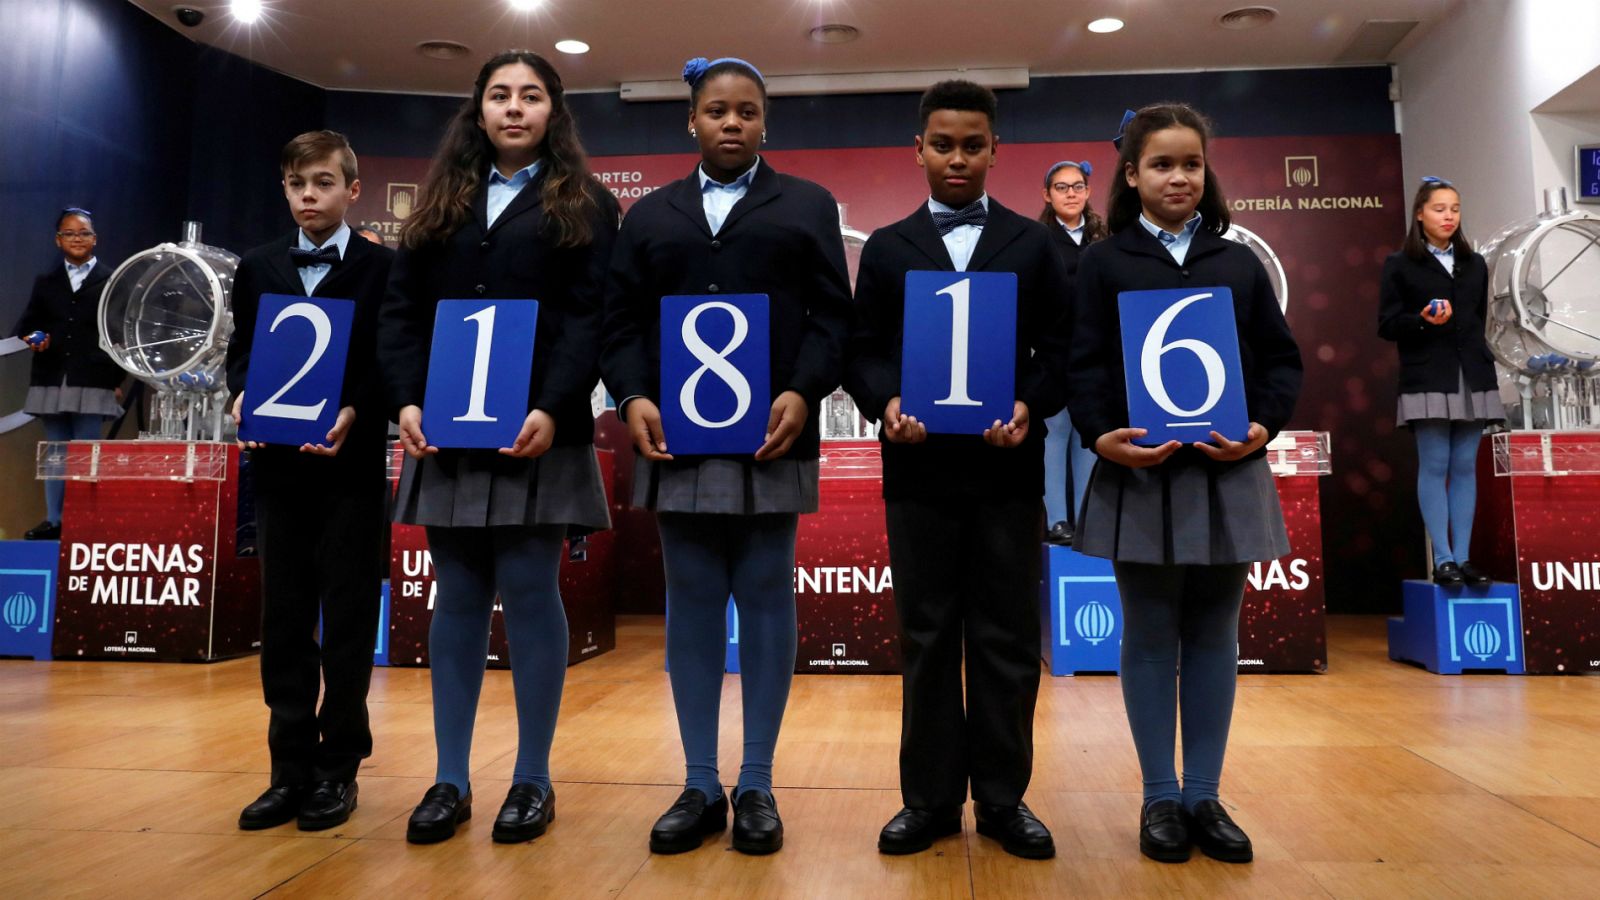 El 21.816, segundo premio del Sorteo del Niño | RTVE.es